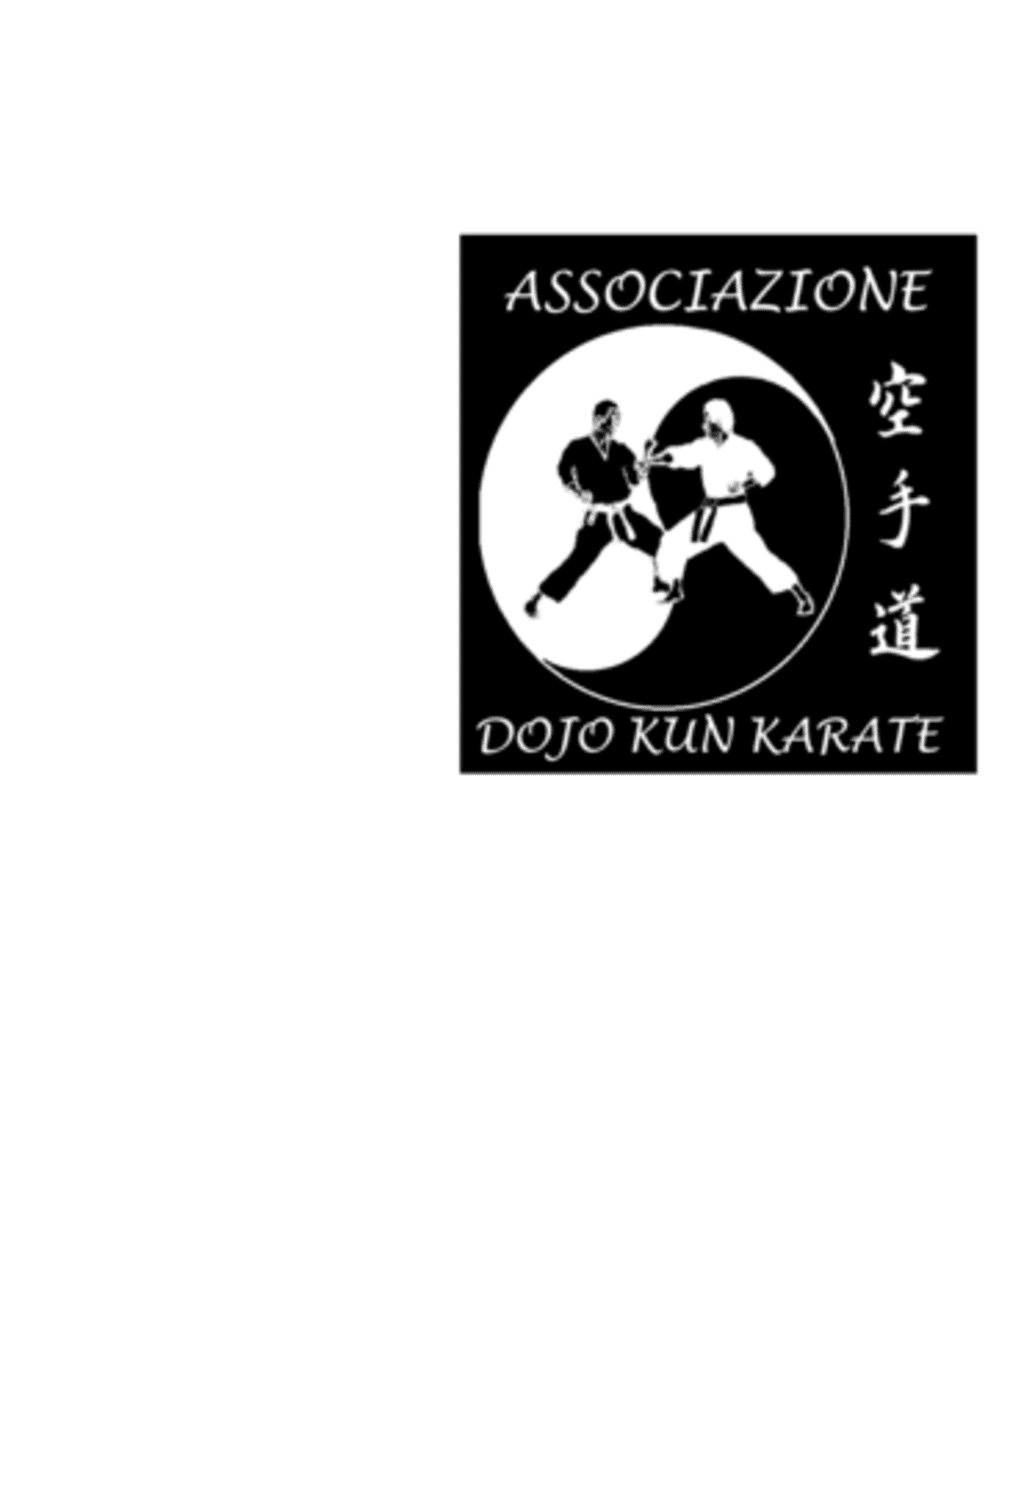 ASD Dojo Kun Karate